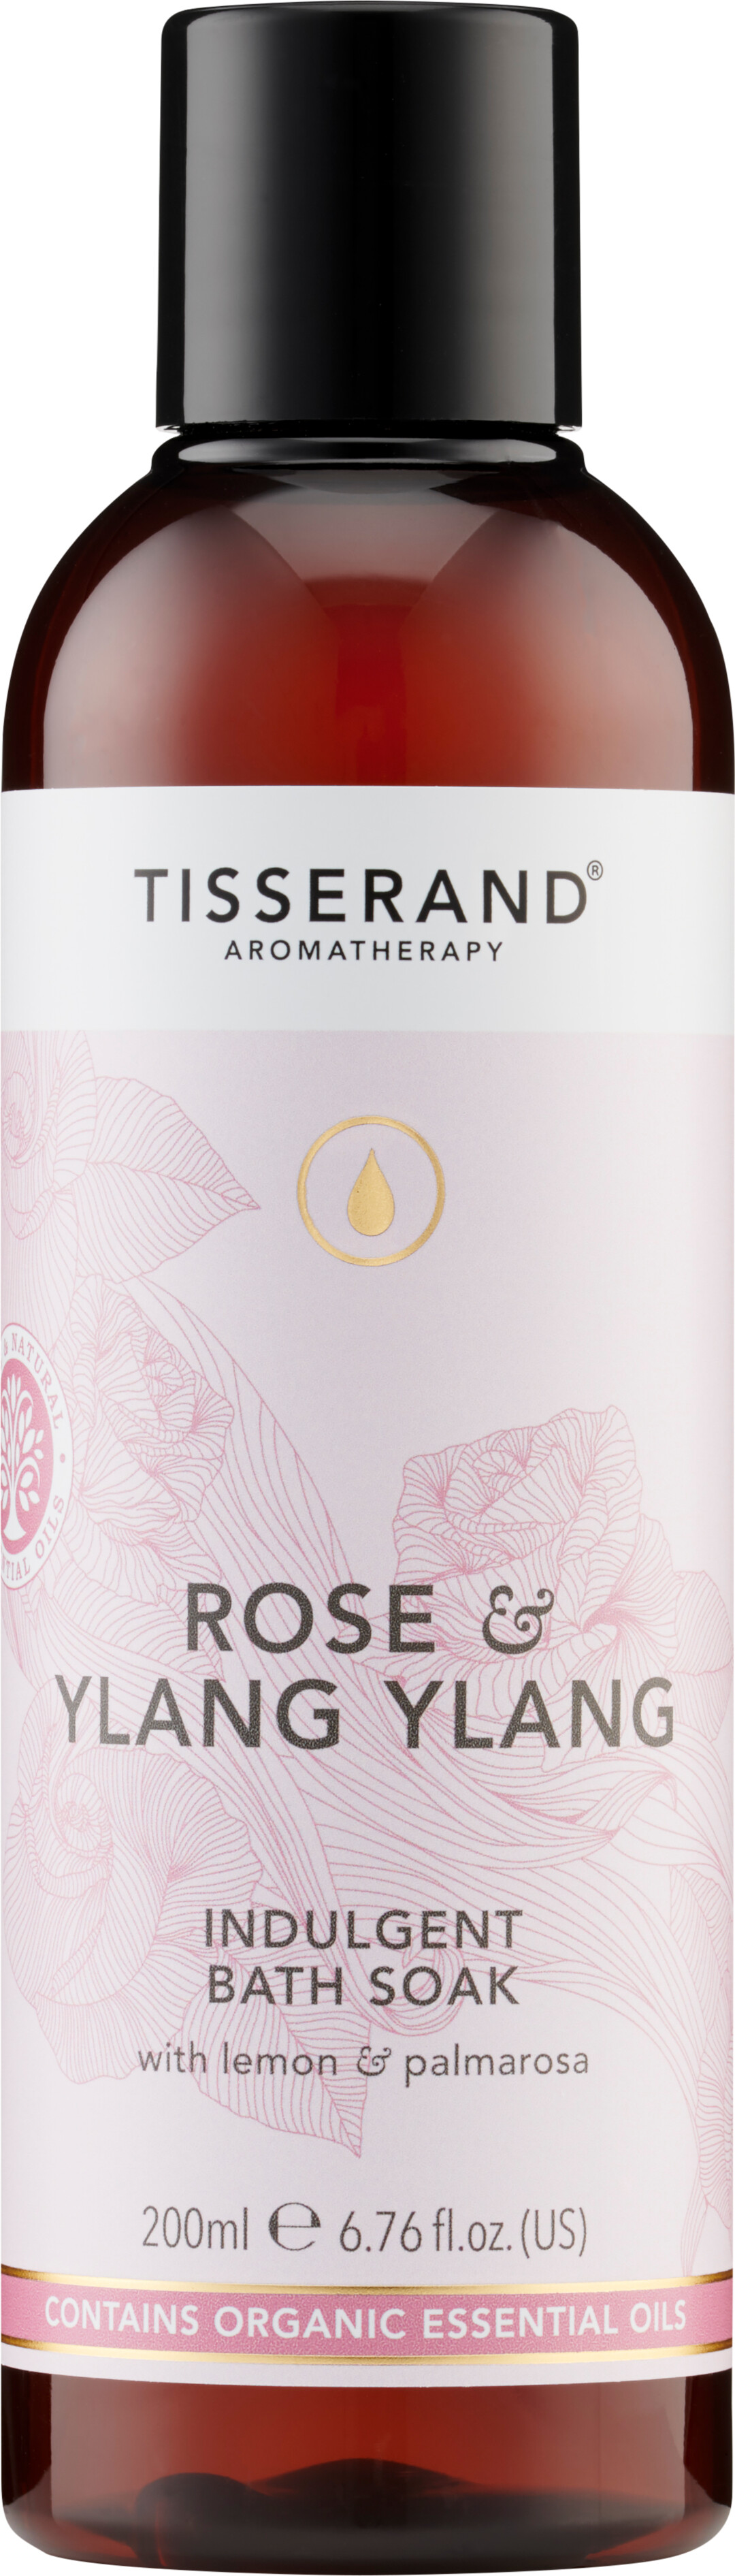 Tisserand Aromatherapy Rose & Ylang Ylang Indulgent Bath Soak 200ml